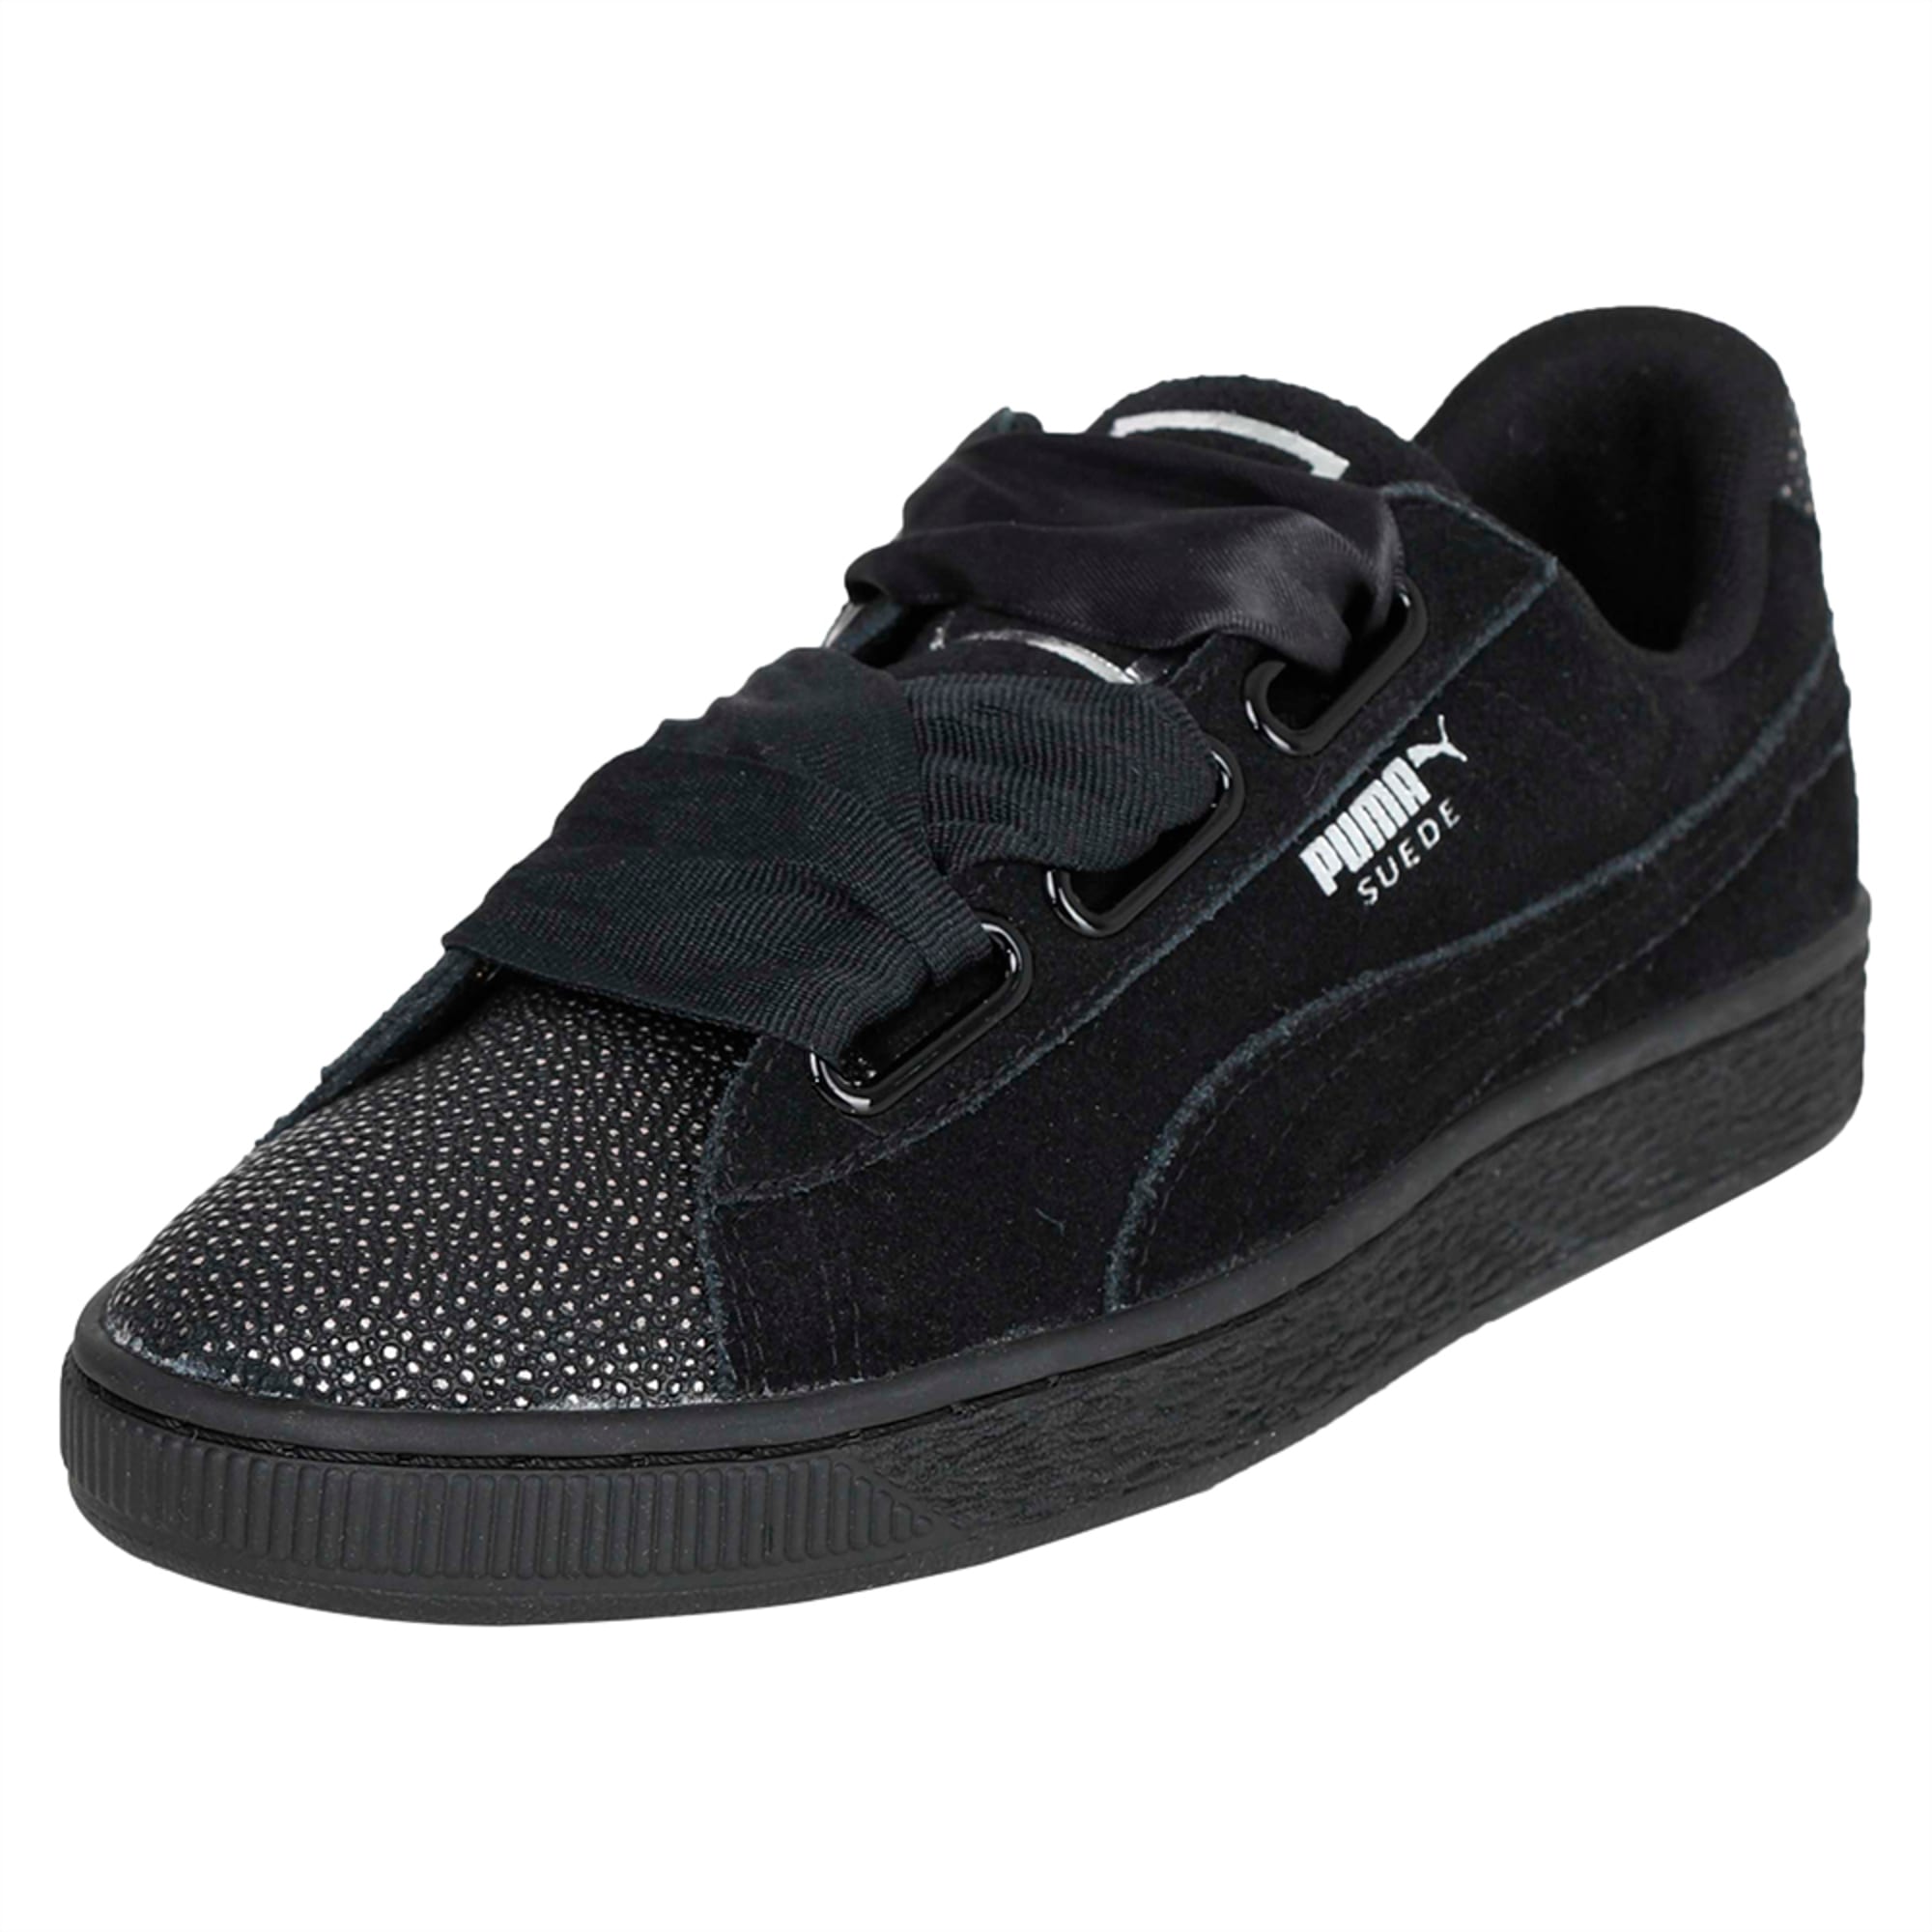 womens black puma tennis shoes